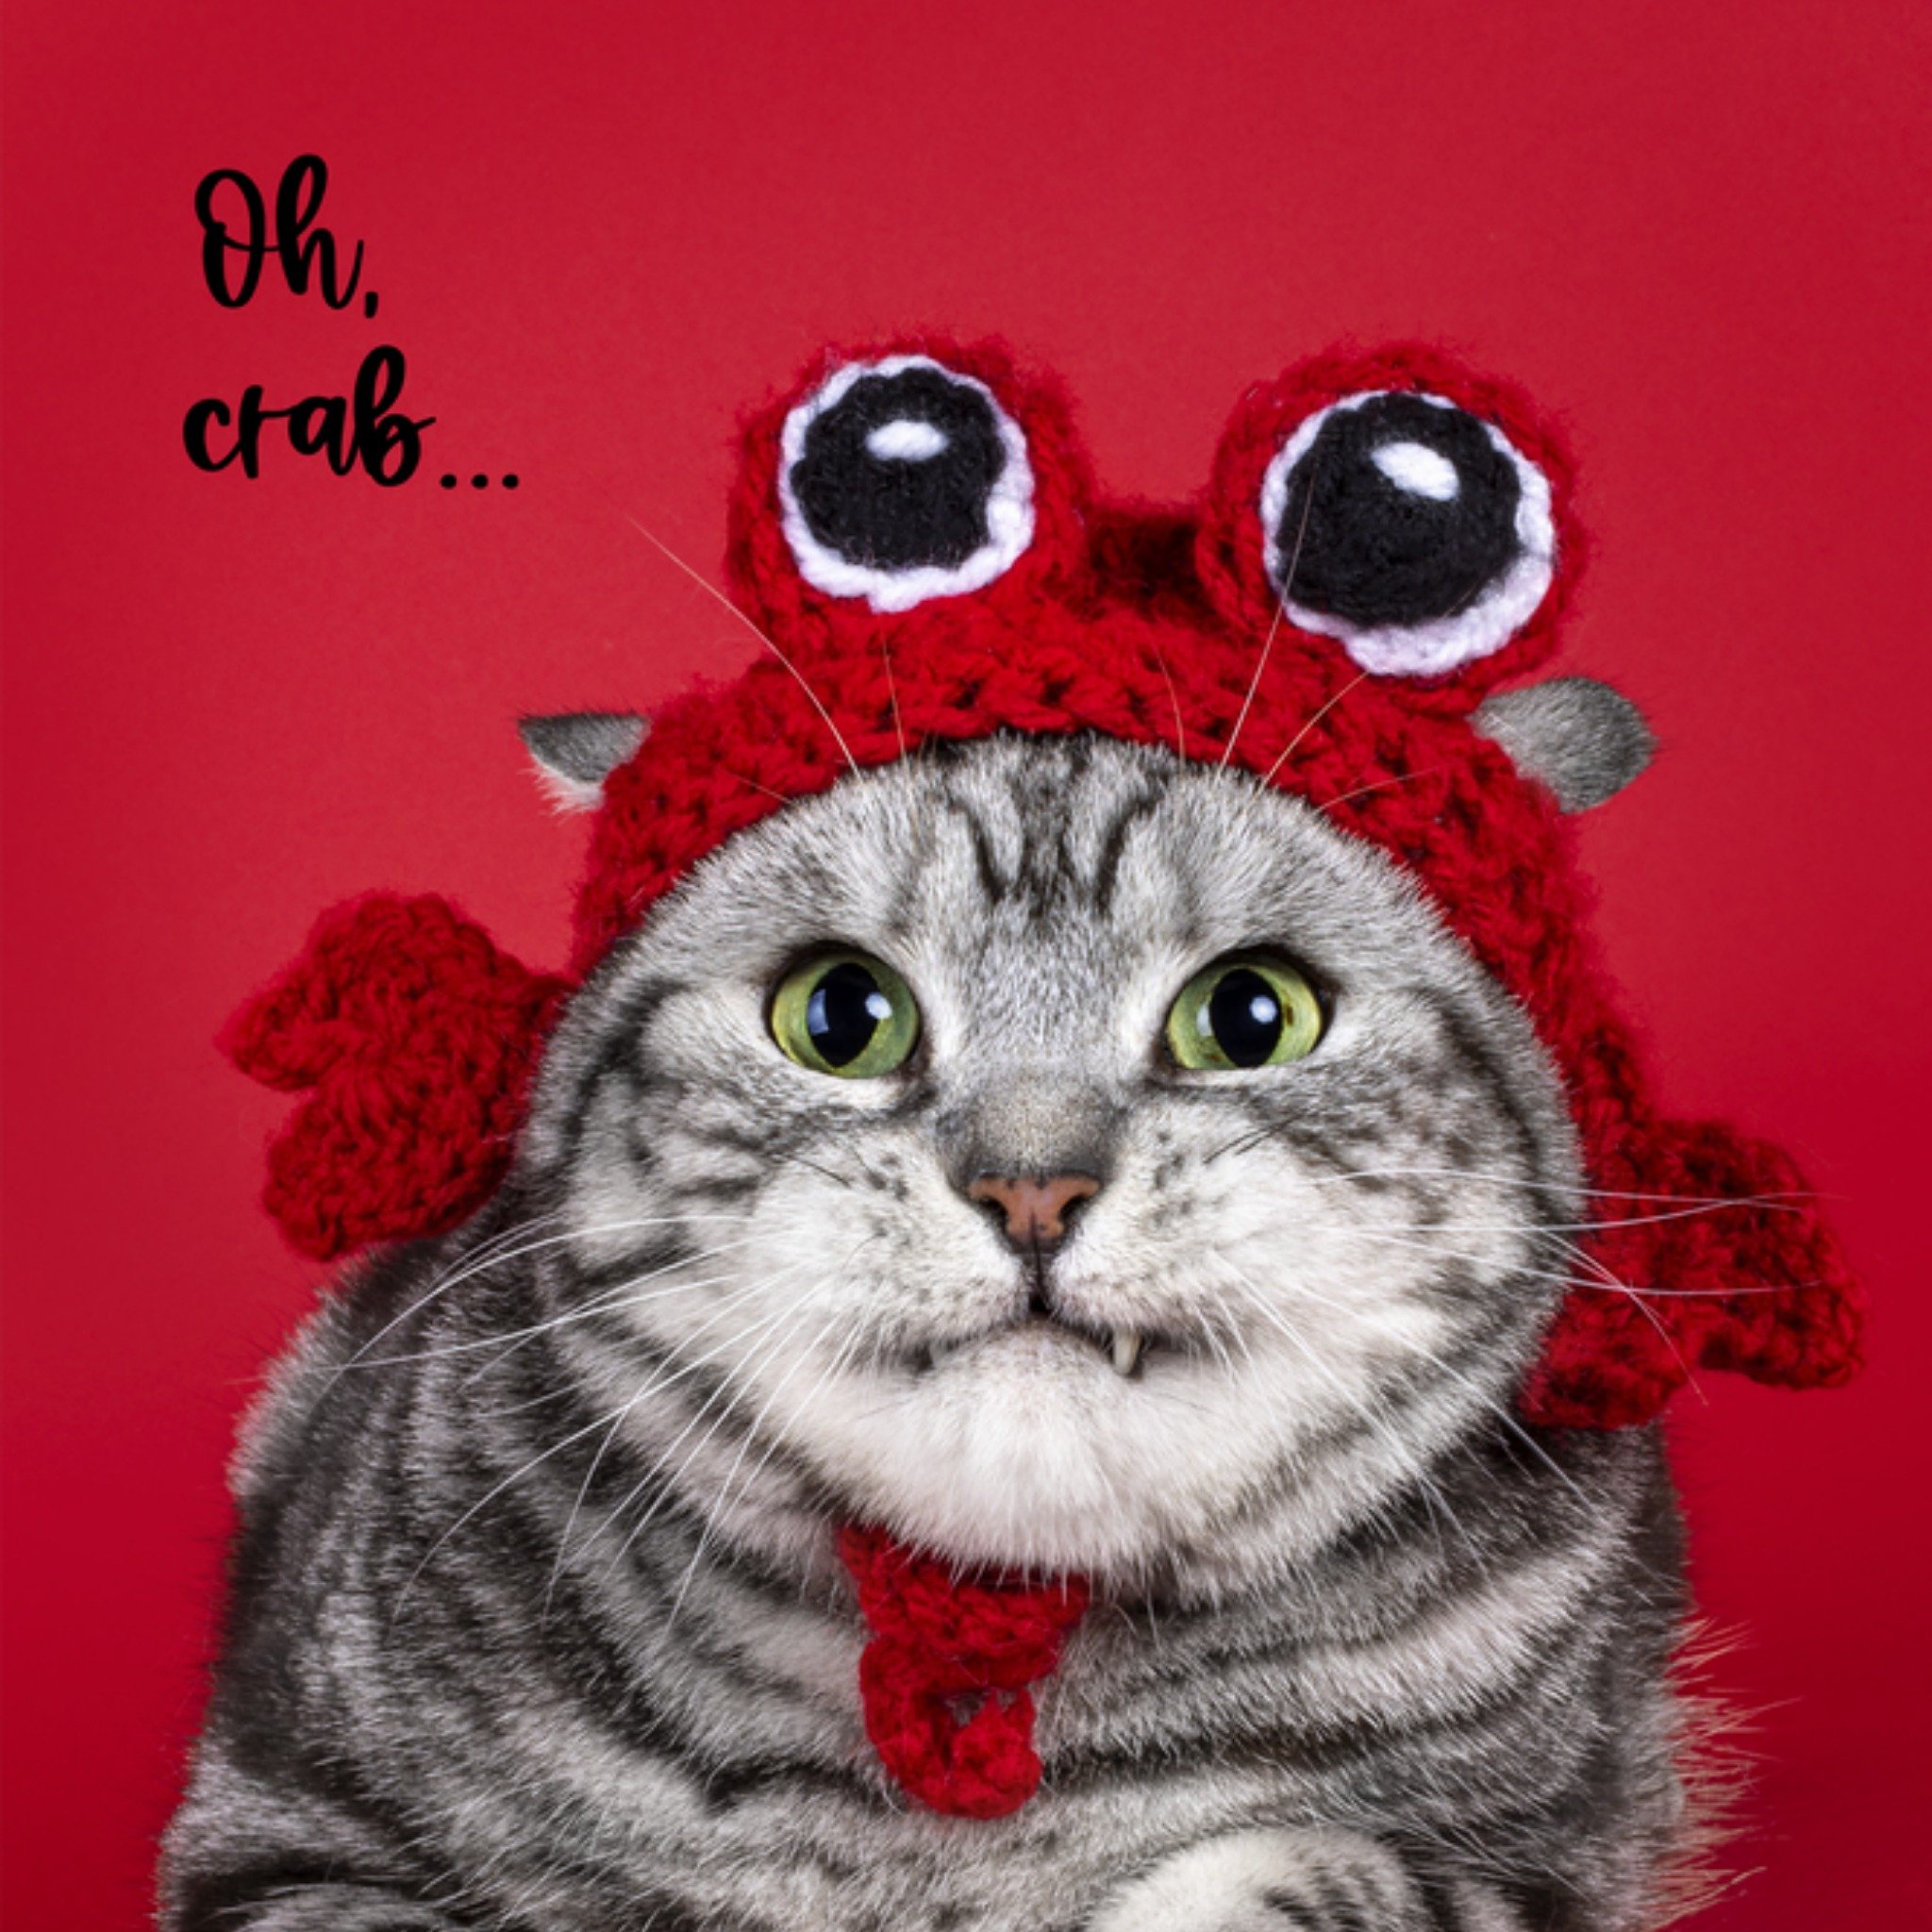 Catchy Images - Beterschapskaart - Oh crab...